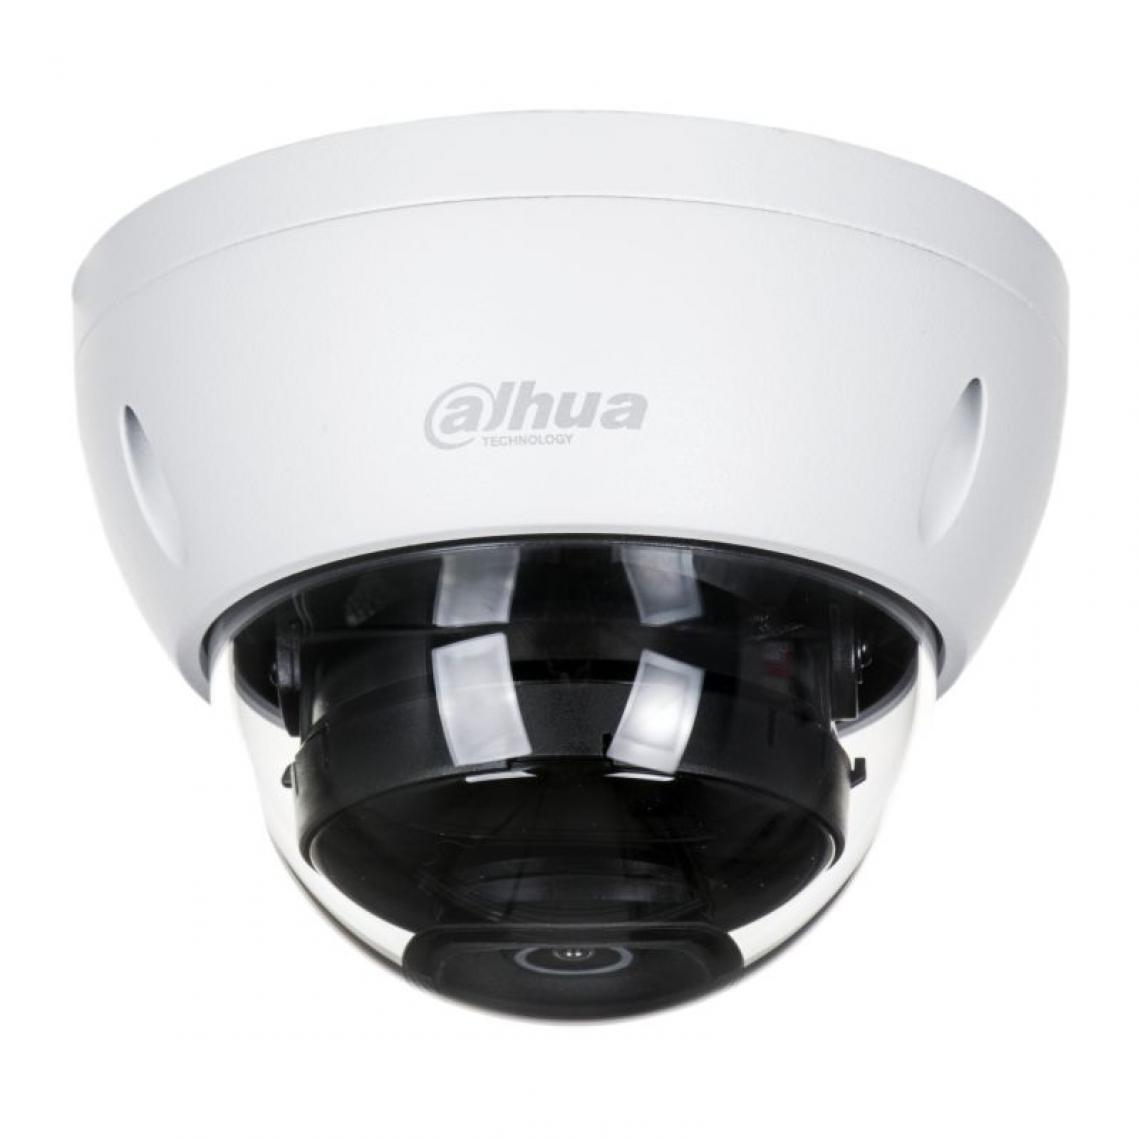 Dahua - Dahua Europe Lite IPC-HDBW1230E Caméra de sécurité IP Intérieure et extérieure Dome Plafond/mur 1920 x 1080 pixels - Caméra de surveillance connectée